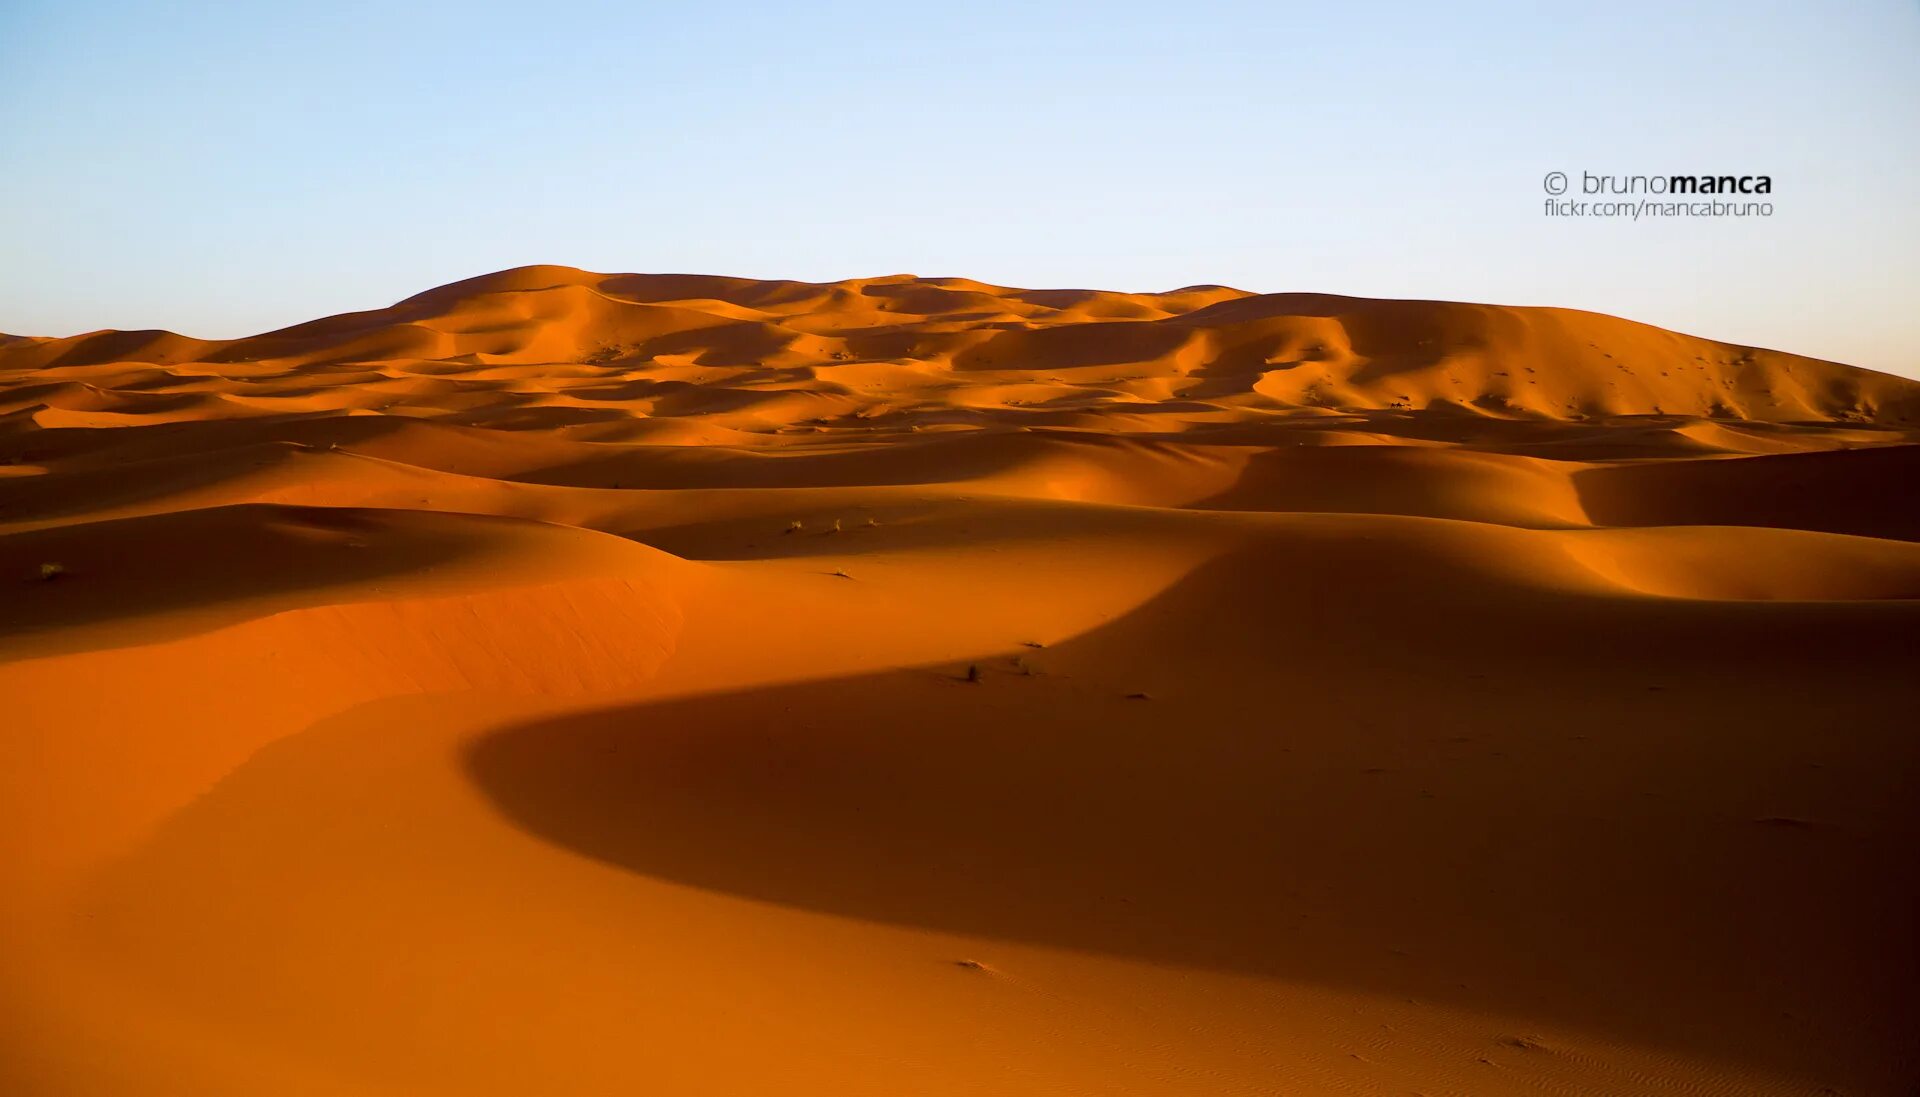 Глаз пустыни роли. Марокко дюны. Песчаные (Марокканские) дюны (Mococcan Dunes) Mary Kay. Глаз пустыни сахара. Марокко сахара.